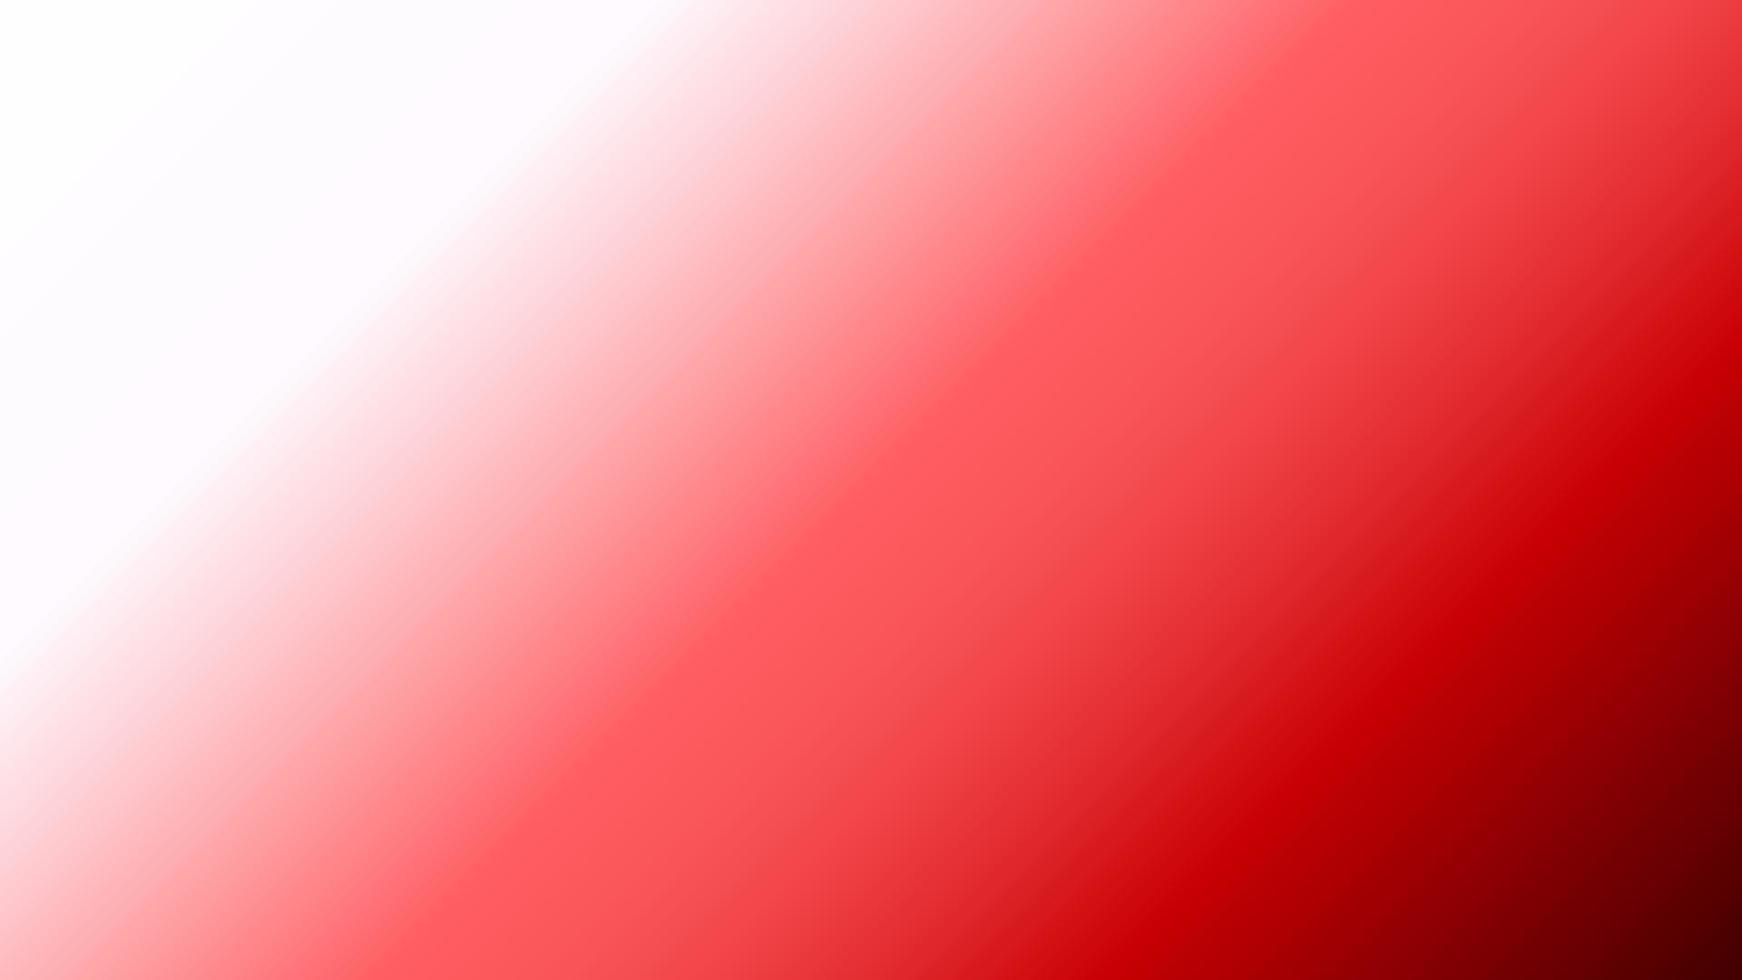 abstrait rouge, fond dégradé blanc parfait pour la promotion, la présentation, le papier peint, le design, etc. vecteur